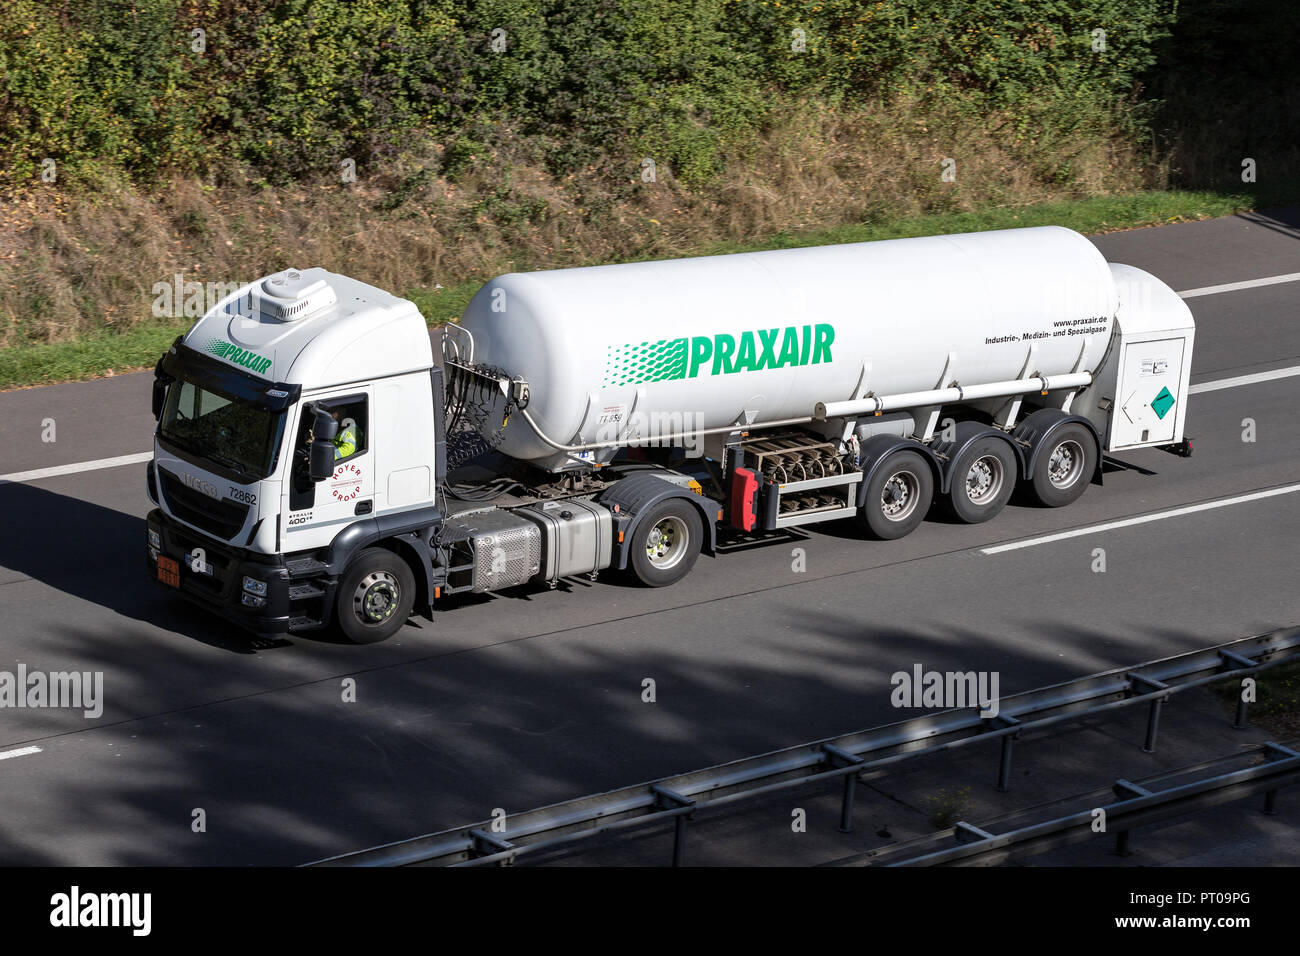 Praxair Lkw auf der Autobahn. Praxair ist ein US-amerikanischer weltweit Industrial Gases Company, der drittgrößte weltweit durch den Umsatz. Stockfoto